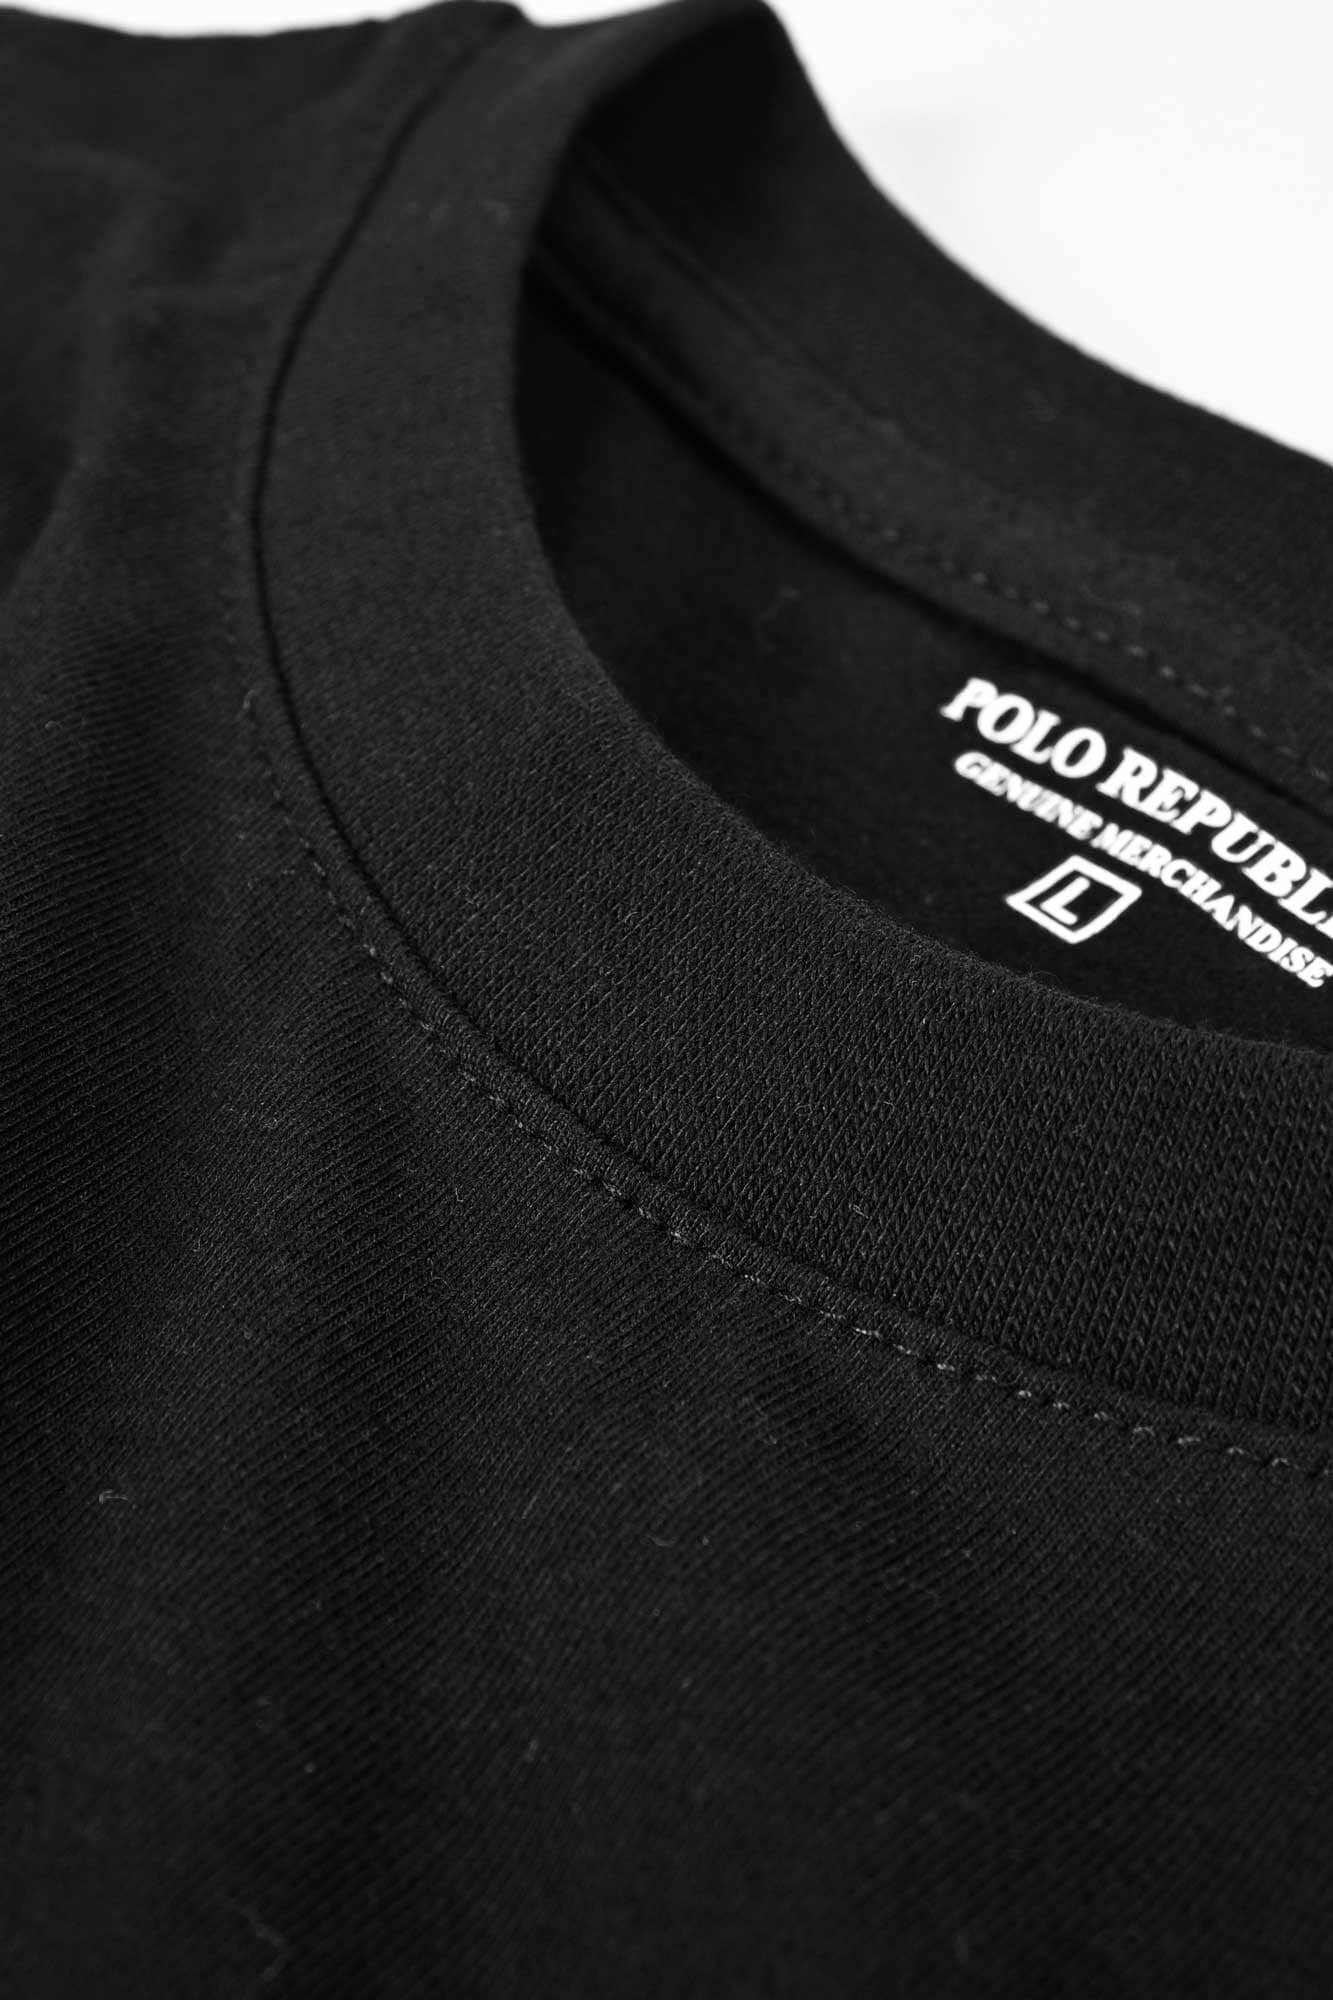 Polo Republica Men's Future Work Printed Crew Neck Tee Shirt Men's Tee Shirt Polo Republica 